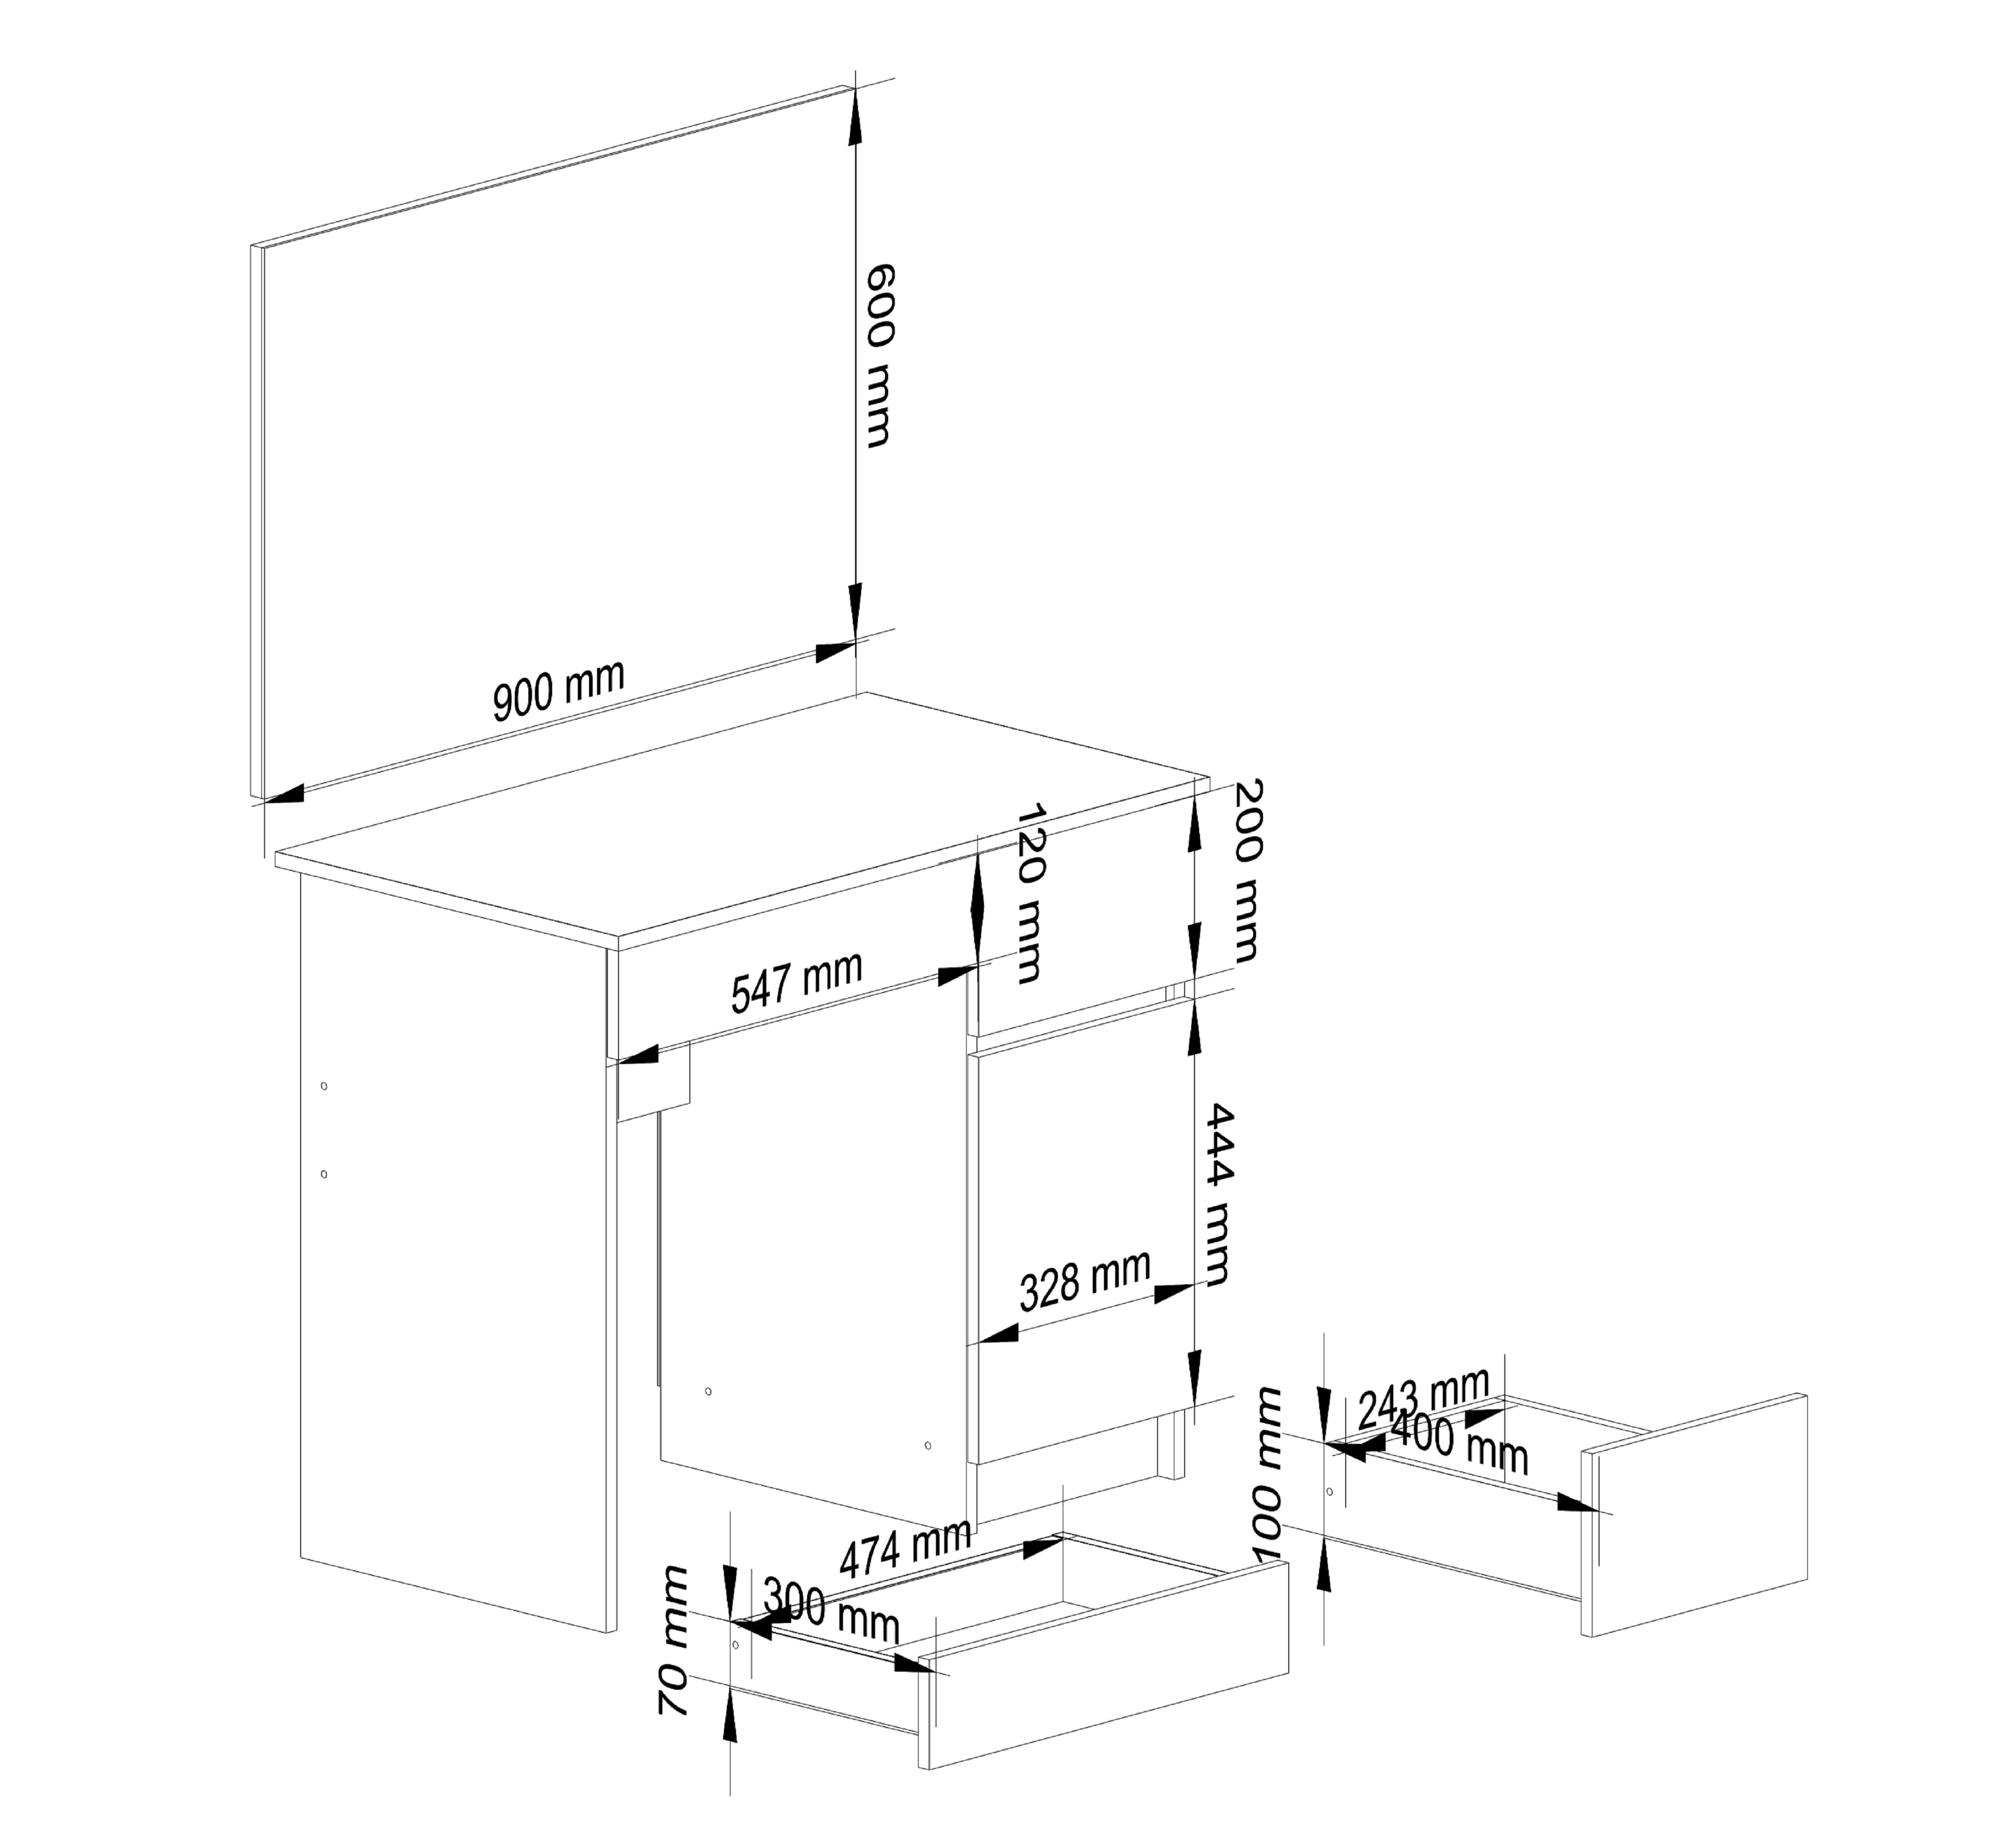 Meble AKORD - Toaletka Wenge 90 cm z lustrem 900x600 prawa 1 drzwi 2 szuflady kolor Wenge mat 2 półki 90x50x142 cm - Wymiary toaletki AKORD - 5907512210642